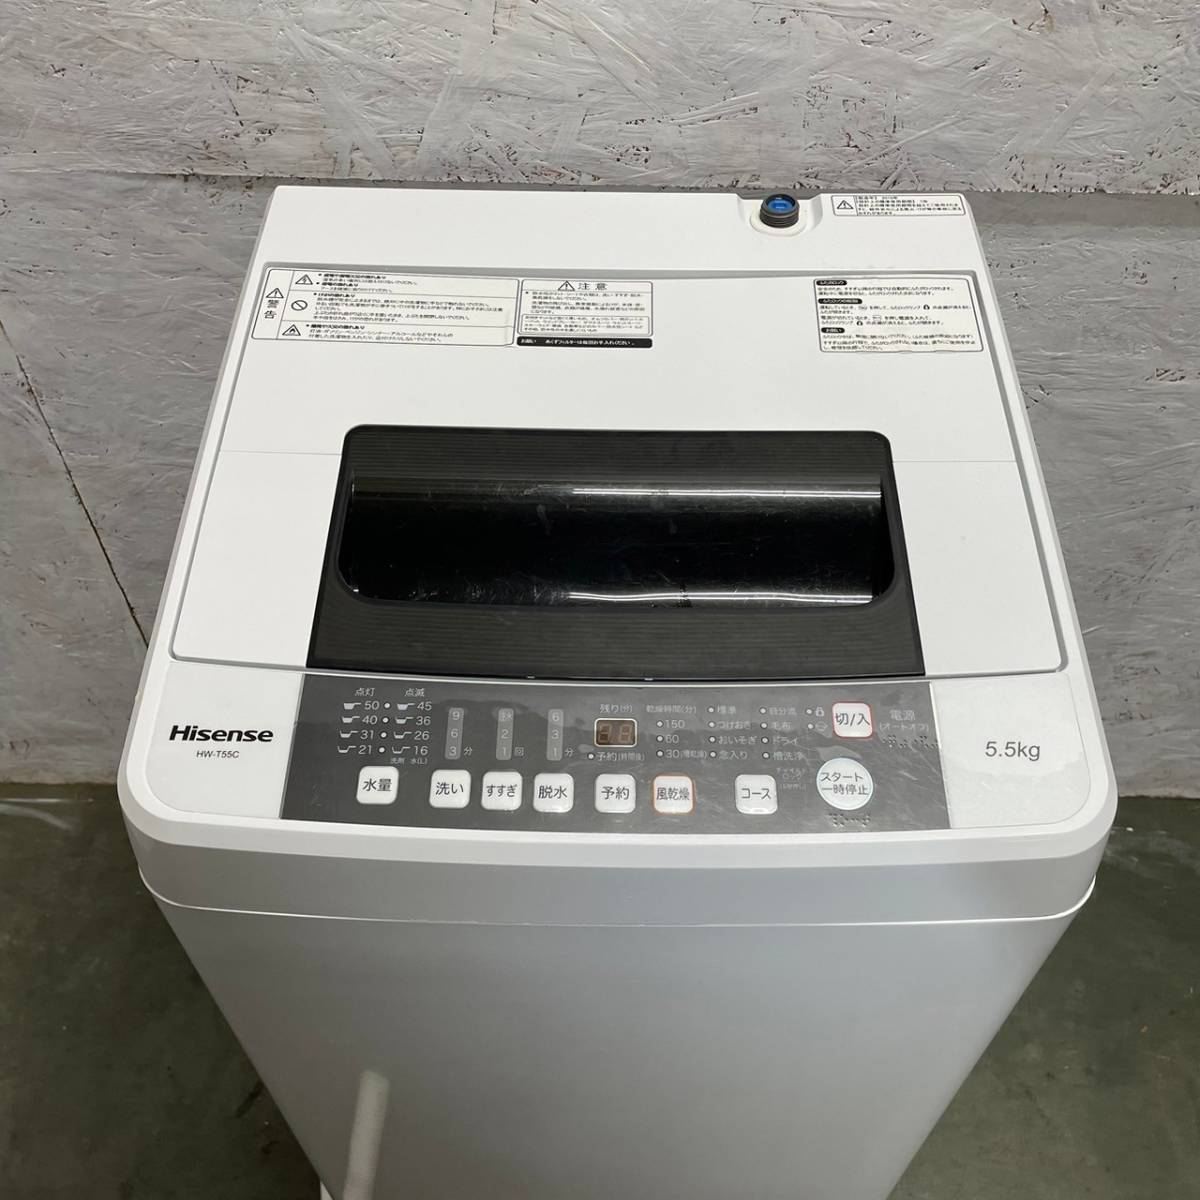 【Hisense】 ハイセンス 全自動電気洗濯機 洗濯機 HW-T55C 5.5kg 2019年製_画像2